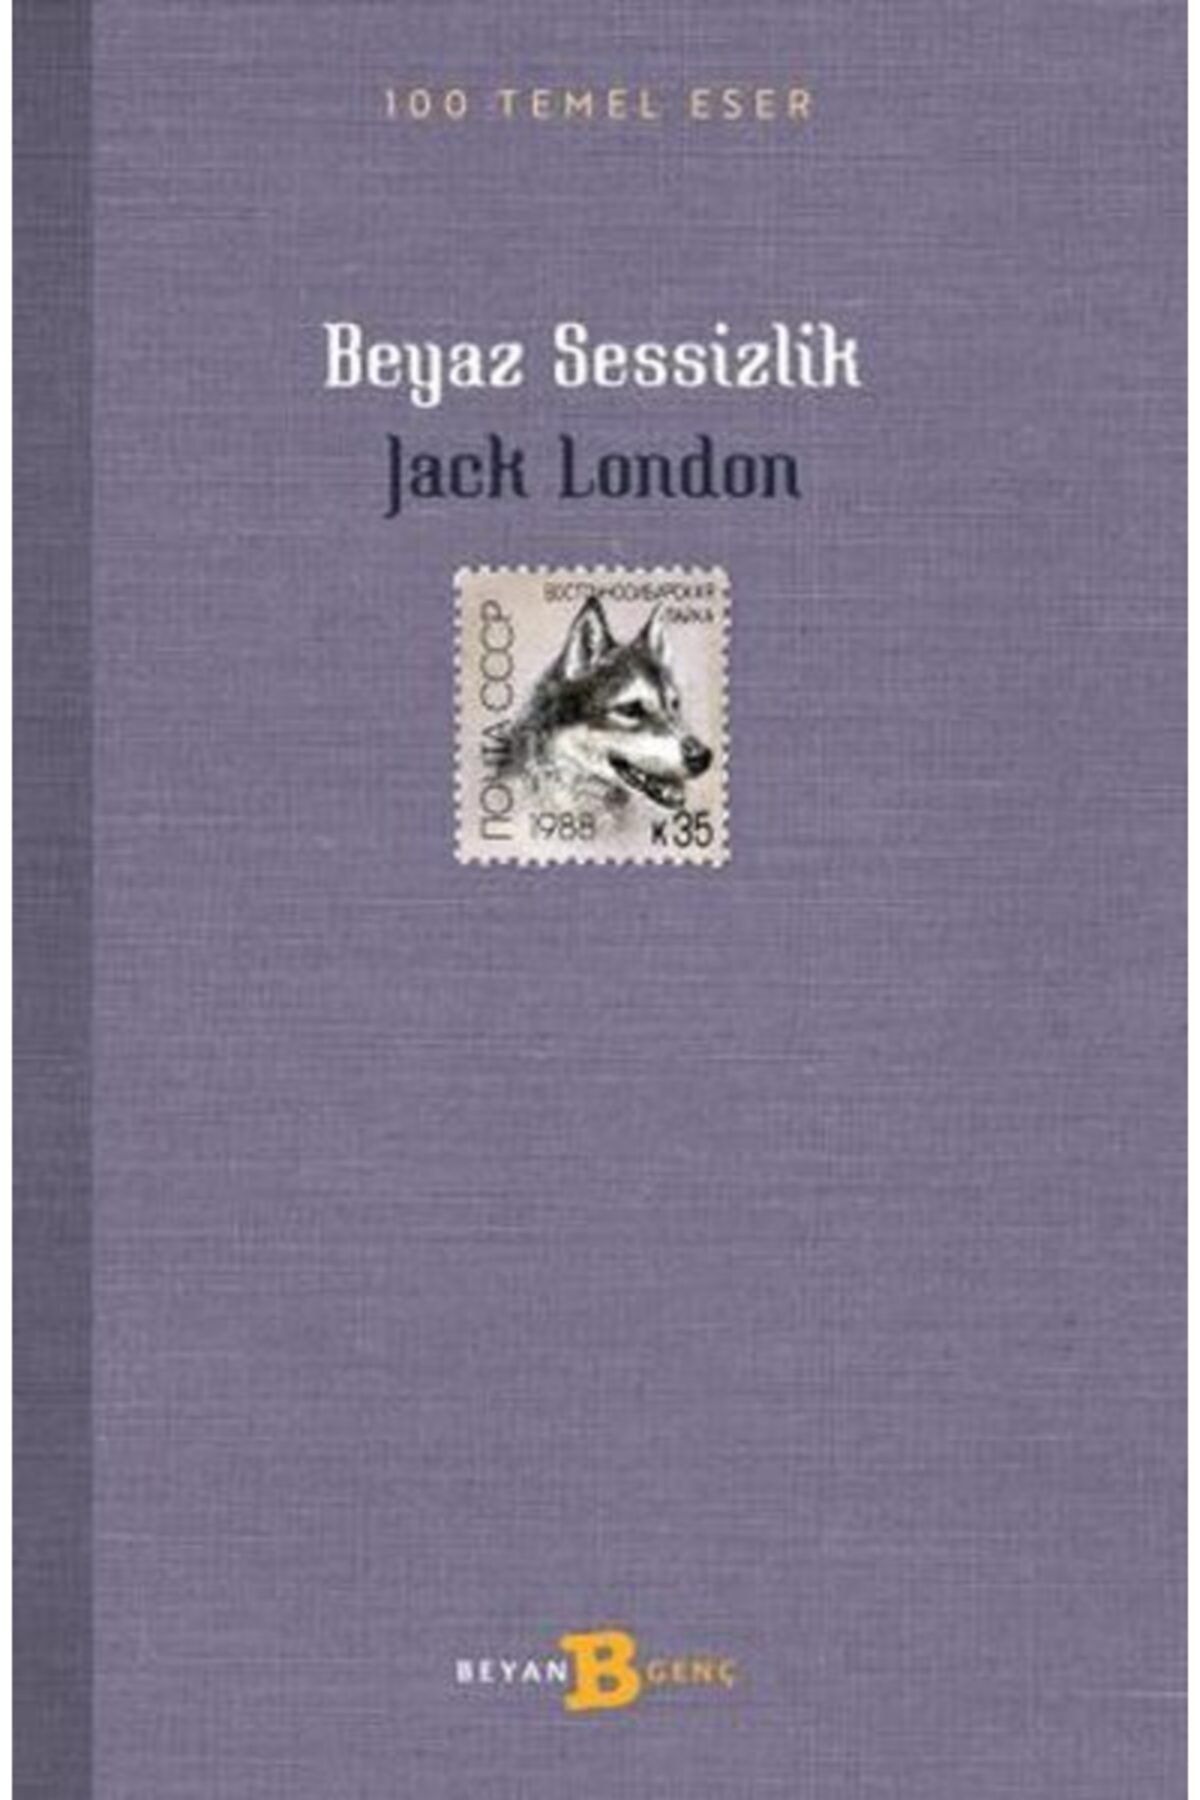 Beyan Yayınları Beyaz Sessizlik Jack London